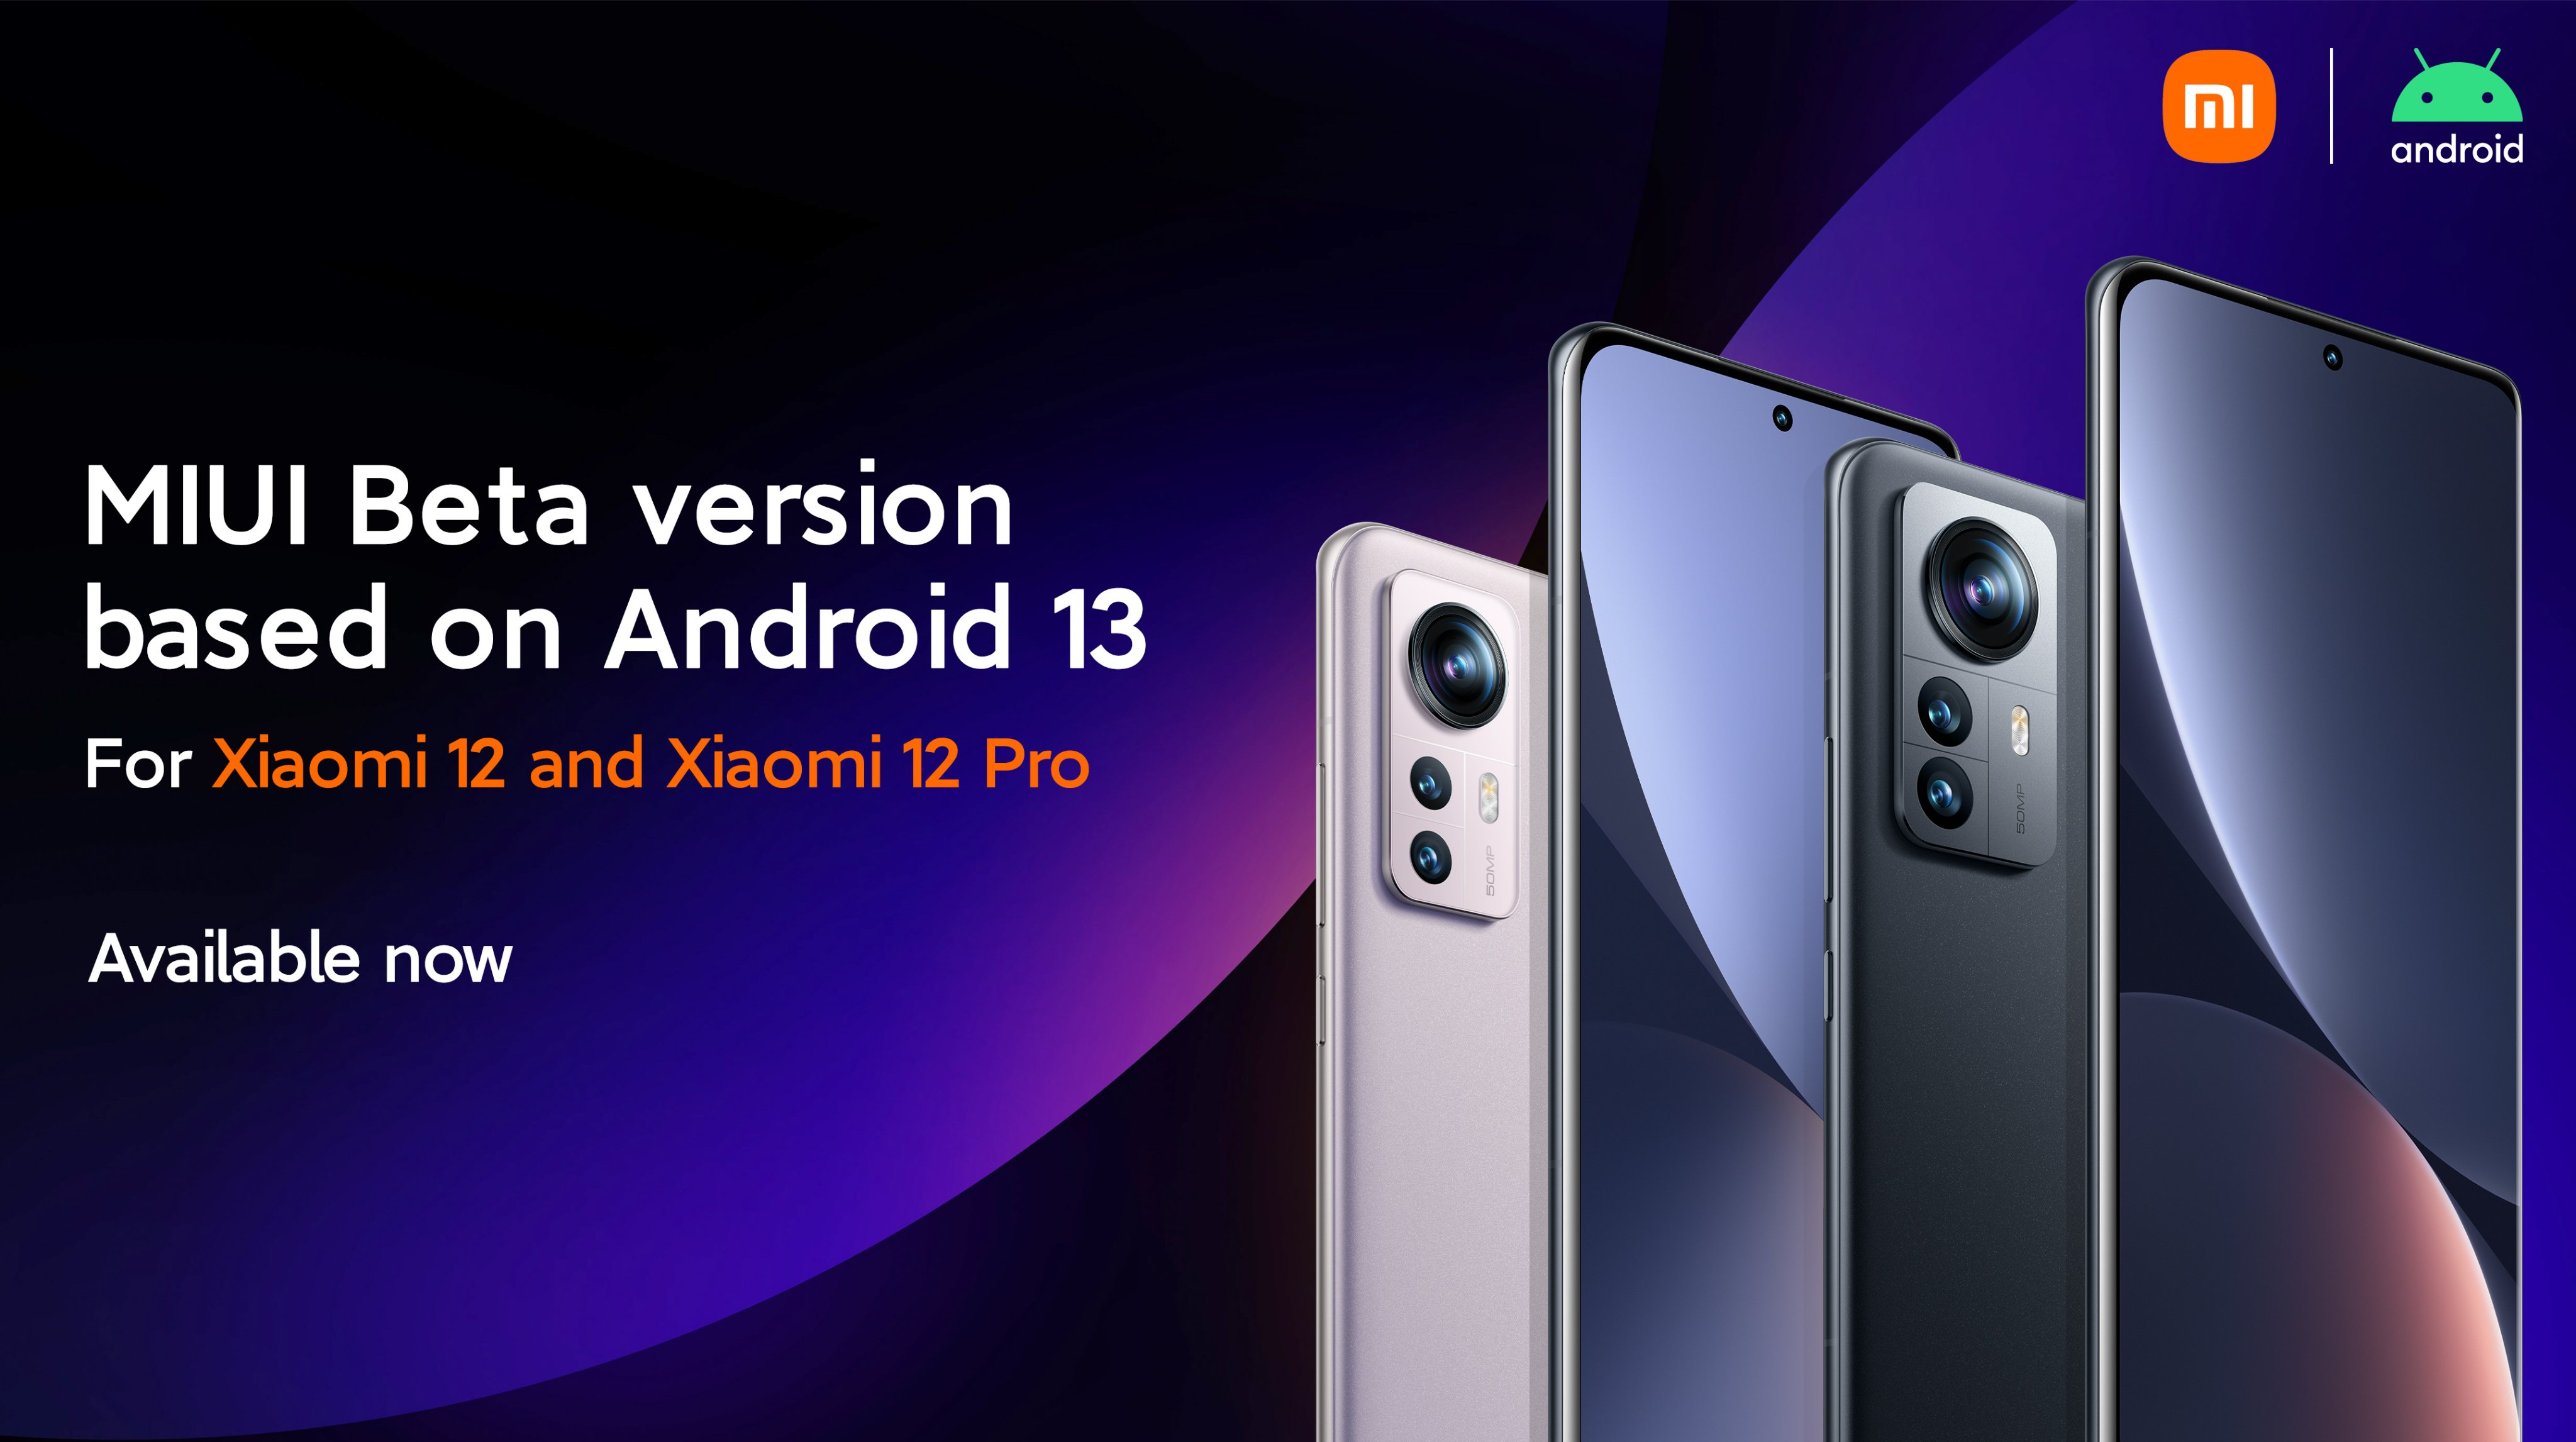 Xiaomi 12 i Xiaomi 12 Pro otrzymują MIUI 13 beta na podstawie Androida 13